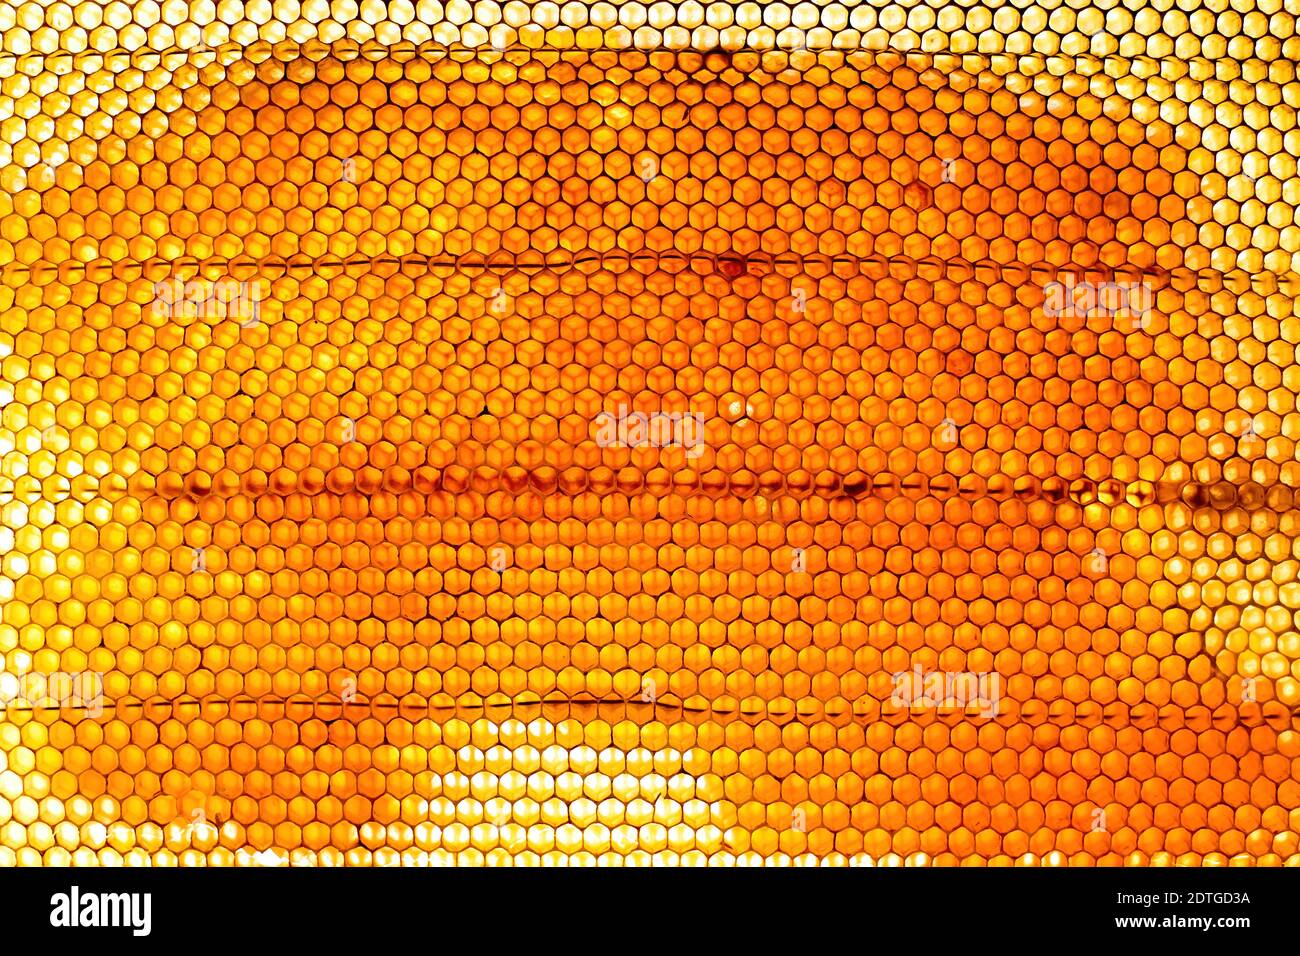 Abeille, pleine de miel des abeilles Banque D'Images